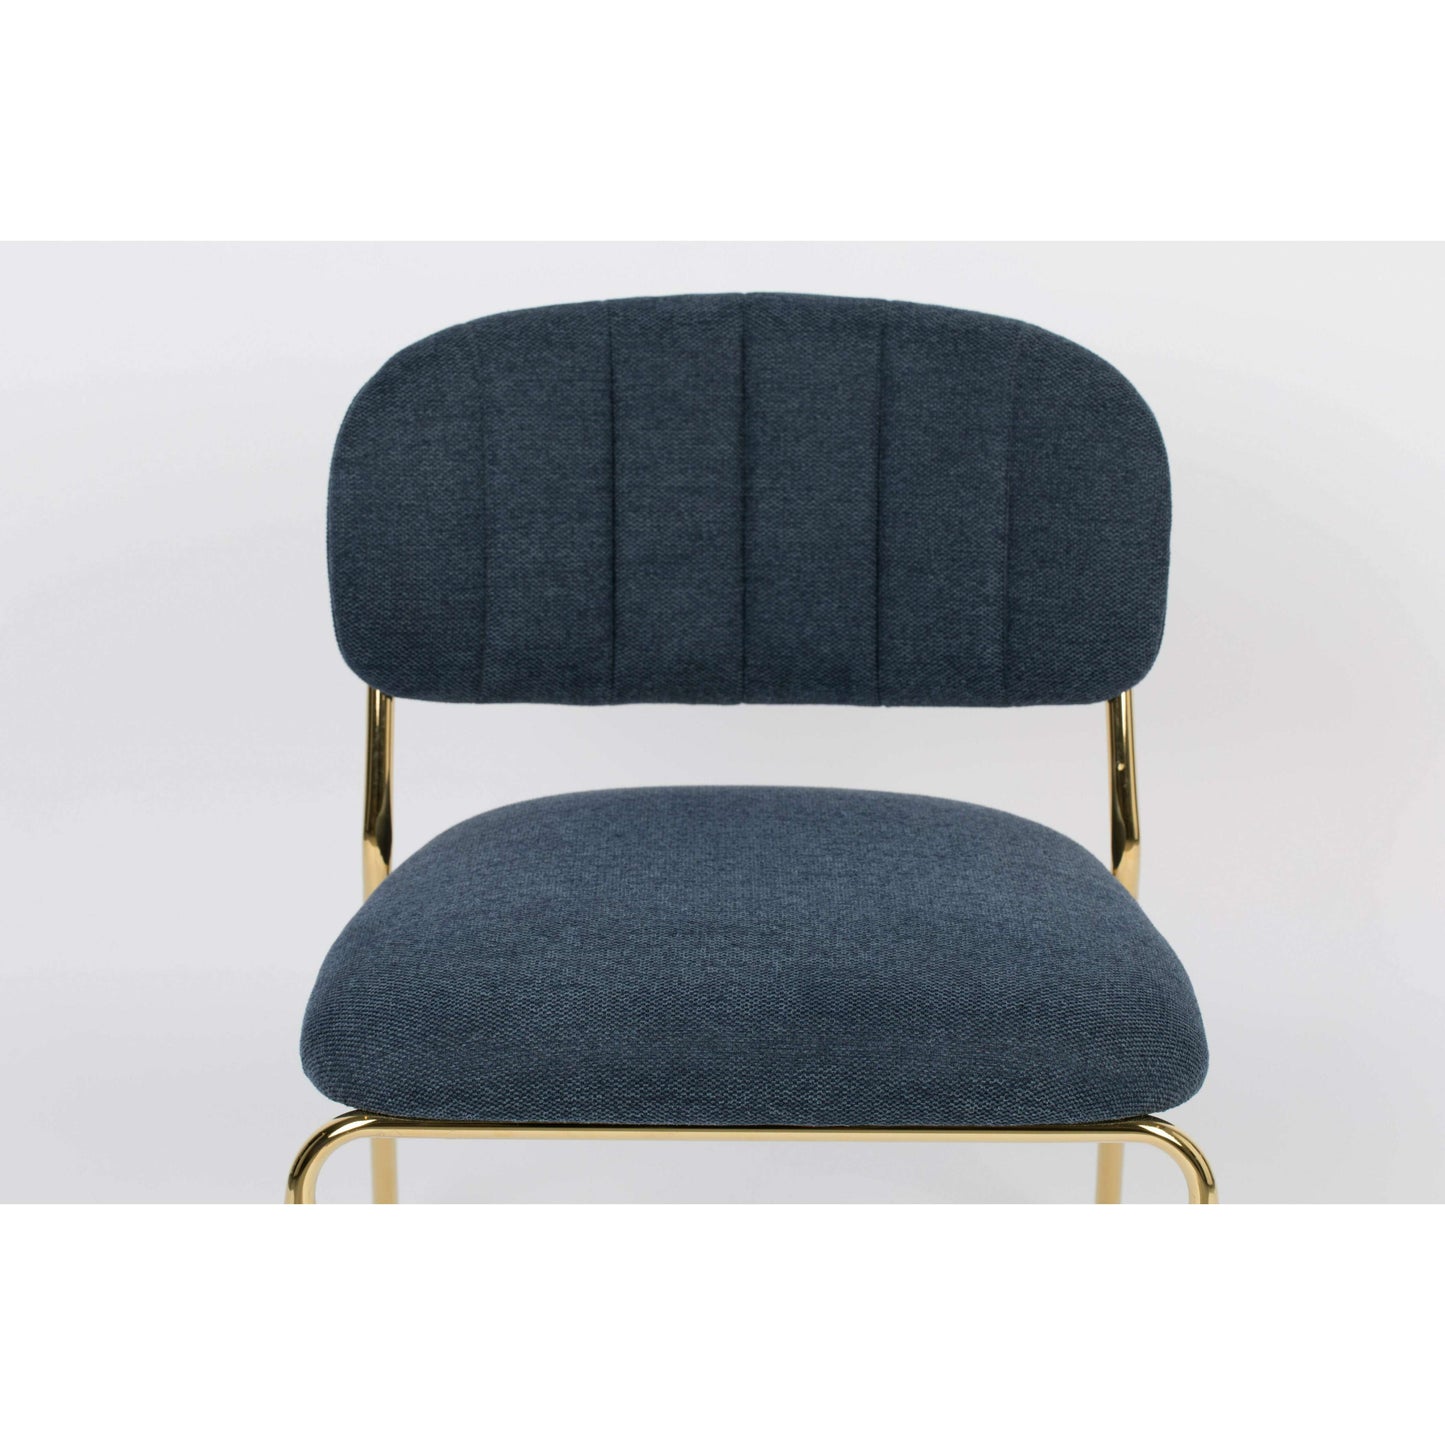 Staerkk Jolien fauteuil goud/donkerblauw